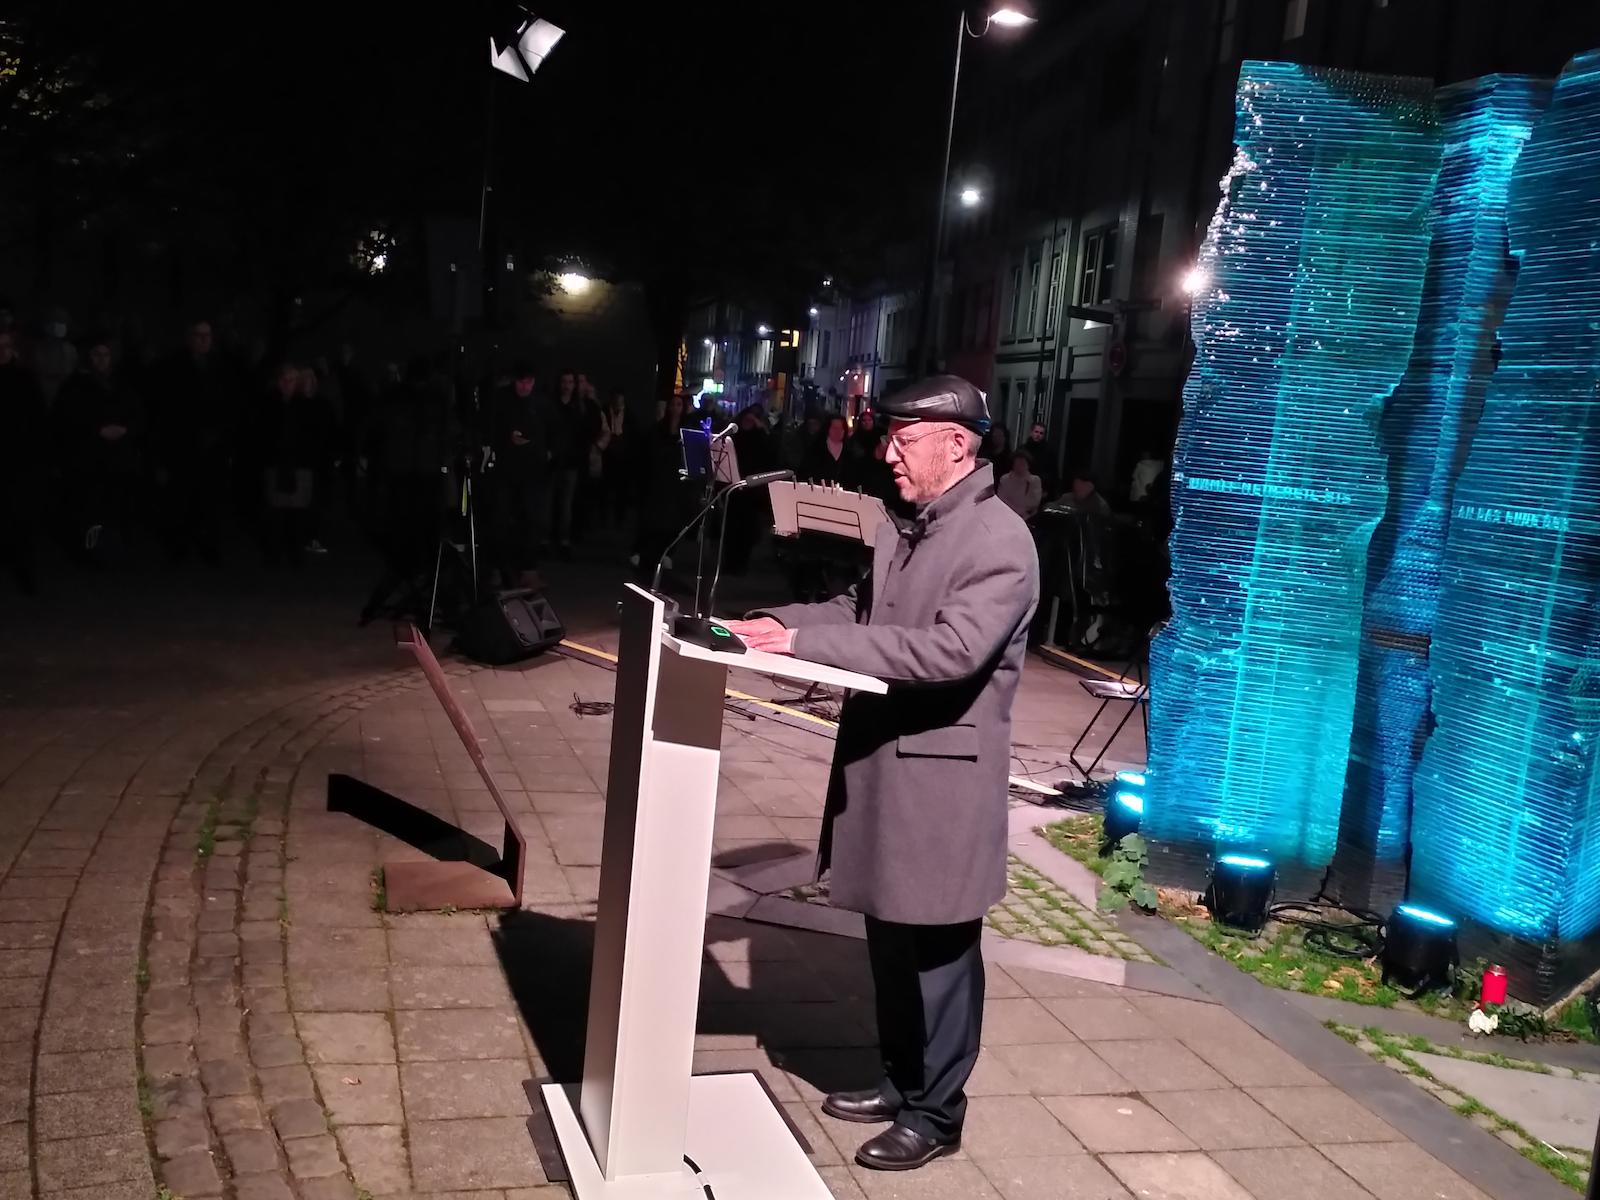 Gedenkfeier zur Pogromnacht am 9. November vor der Aachener Synagoge. Der Rabbiner der Aachener Gemeinde Michael Jedwabny spricht das Totengebet. Schülerinnen und Schüler des Einhardgymnasiums stellten zu den Ereignissen aktuelle Bezüge her.